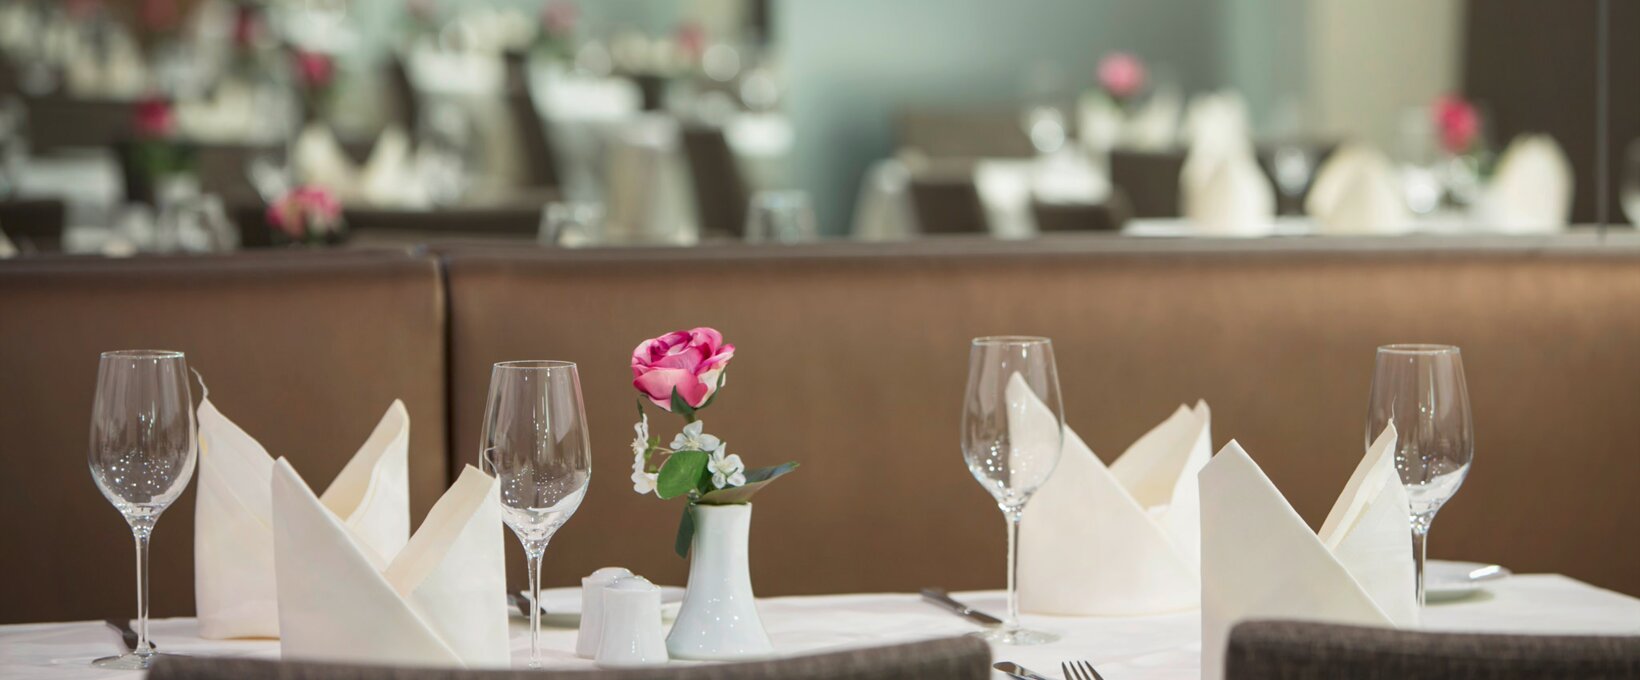 Restaurant Tafelspitz mit gedeckten Tischen | Hotel Schillerpark in Linz